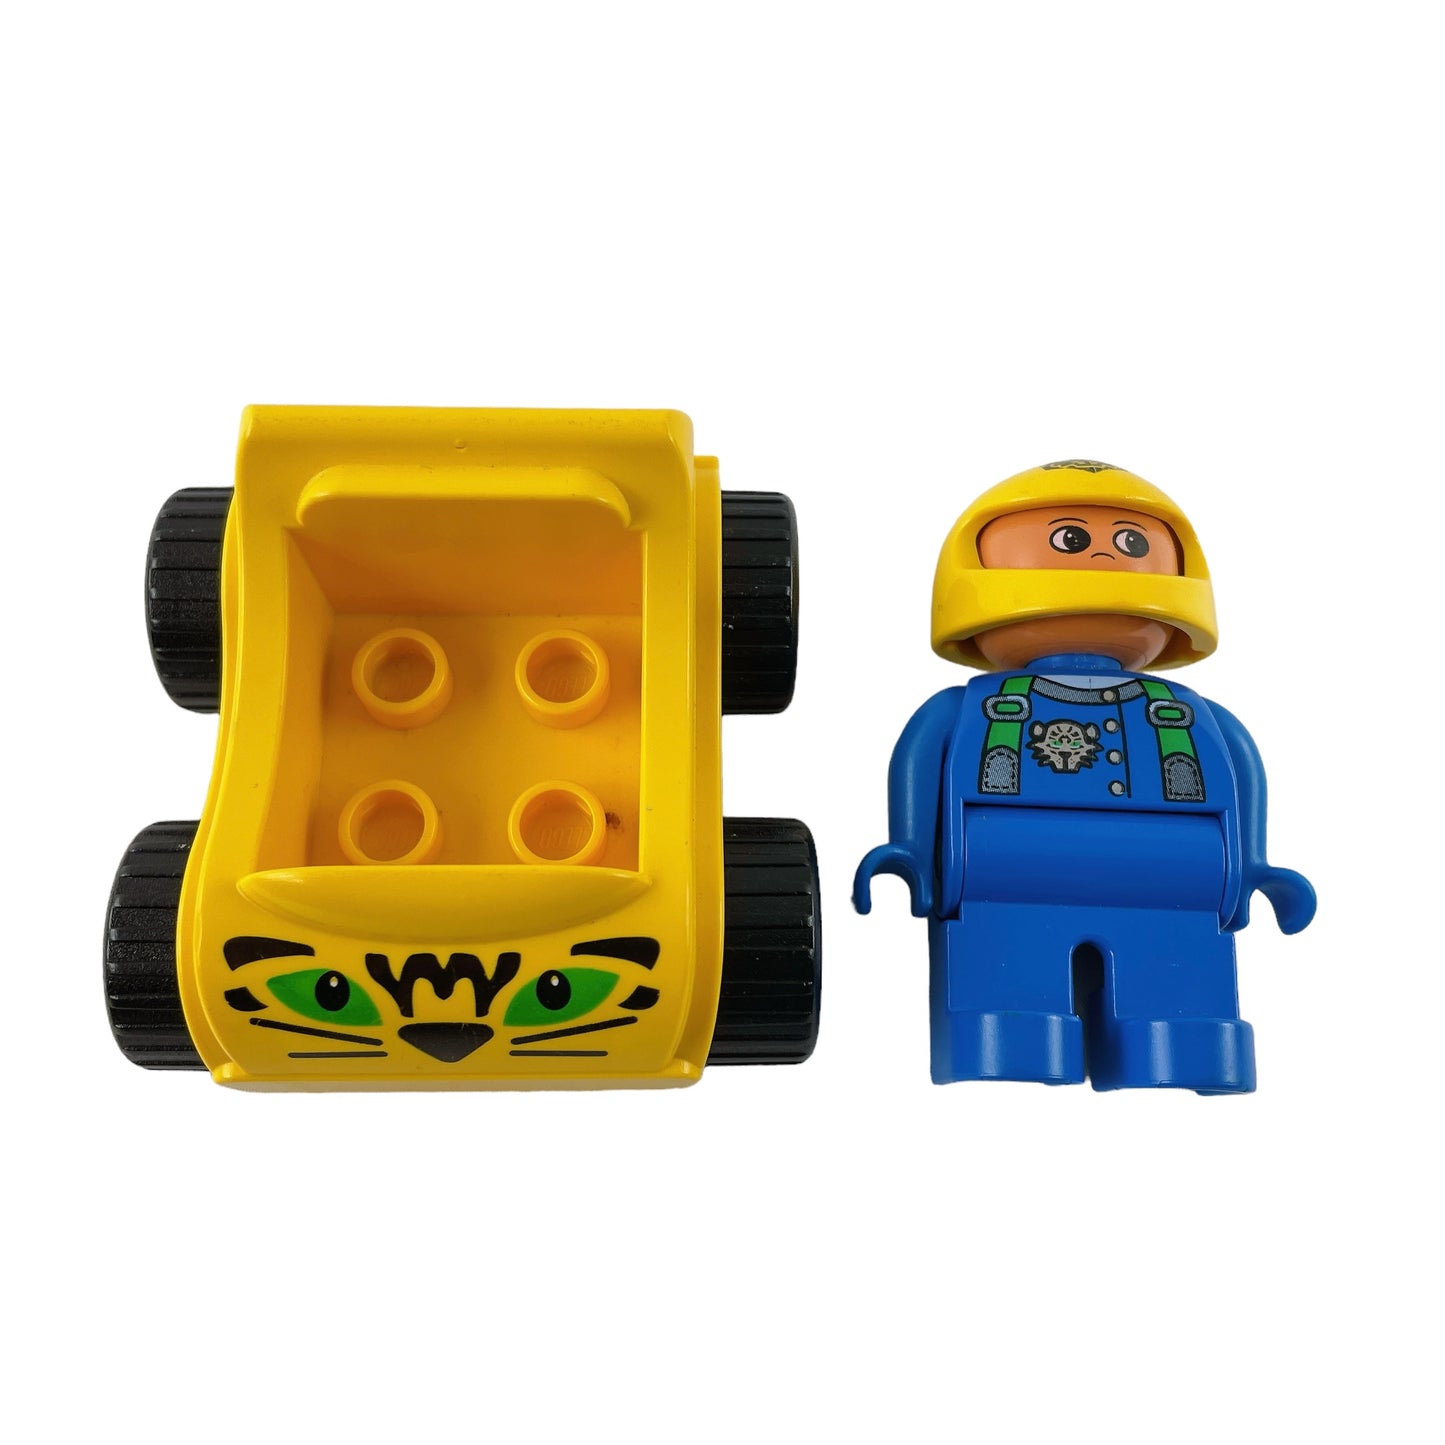 LEGO® Duplo 1404 Gelber Rennflitzer